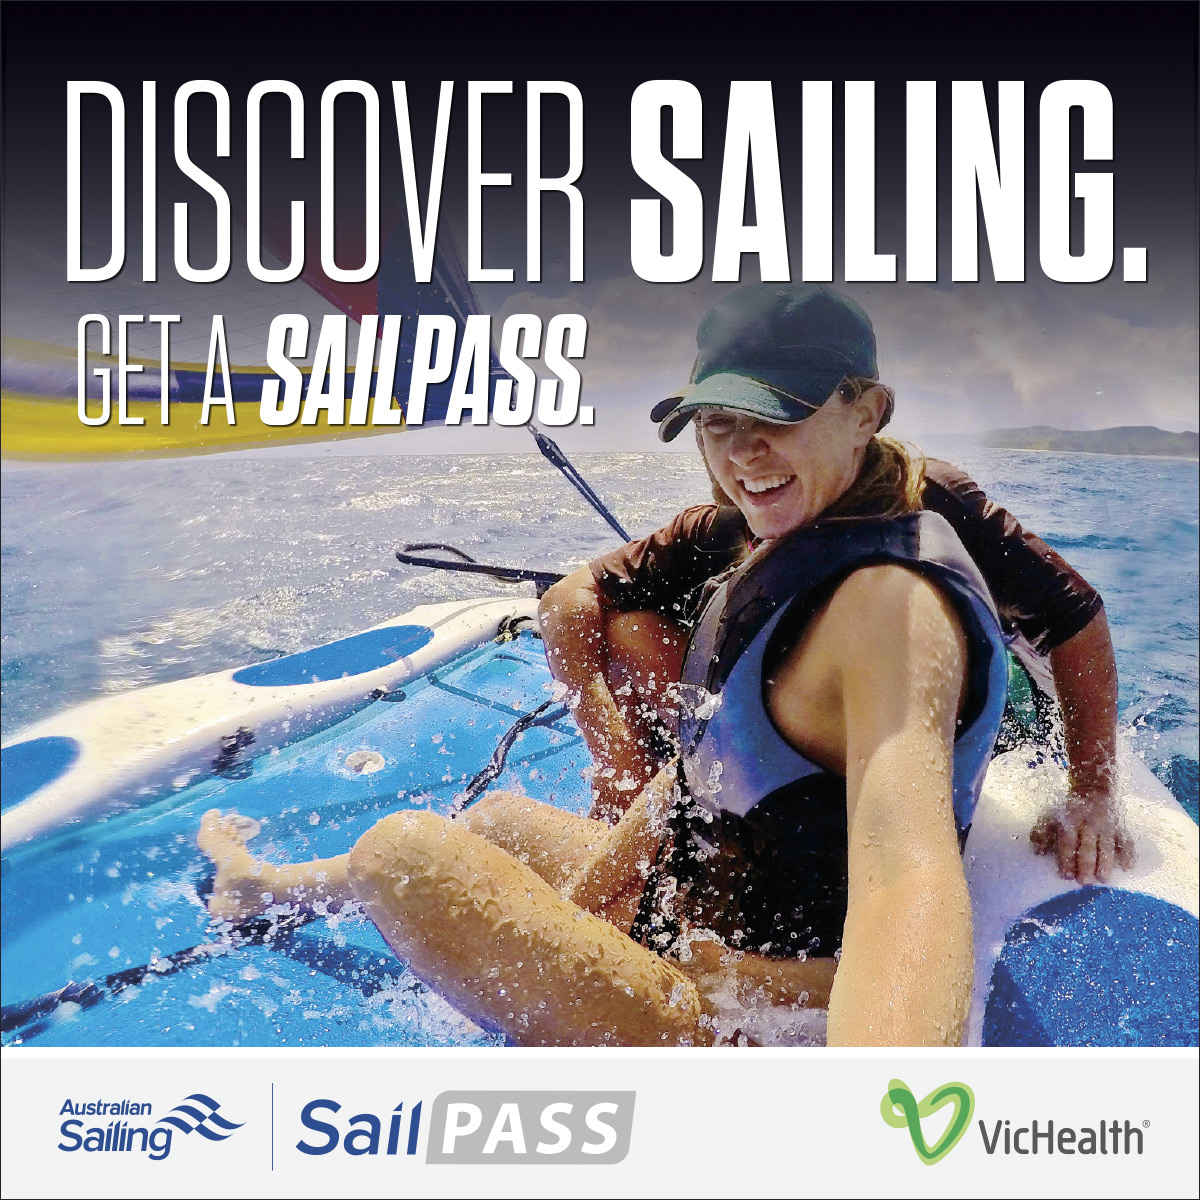 SailPass image